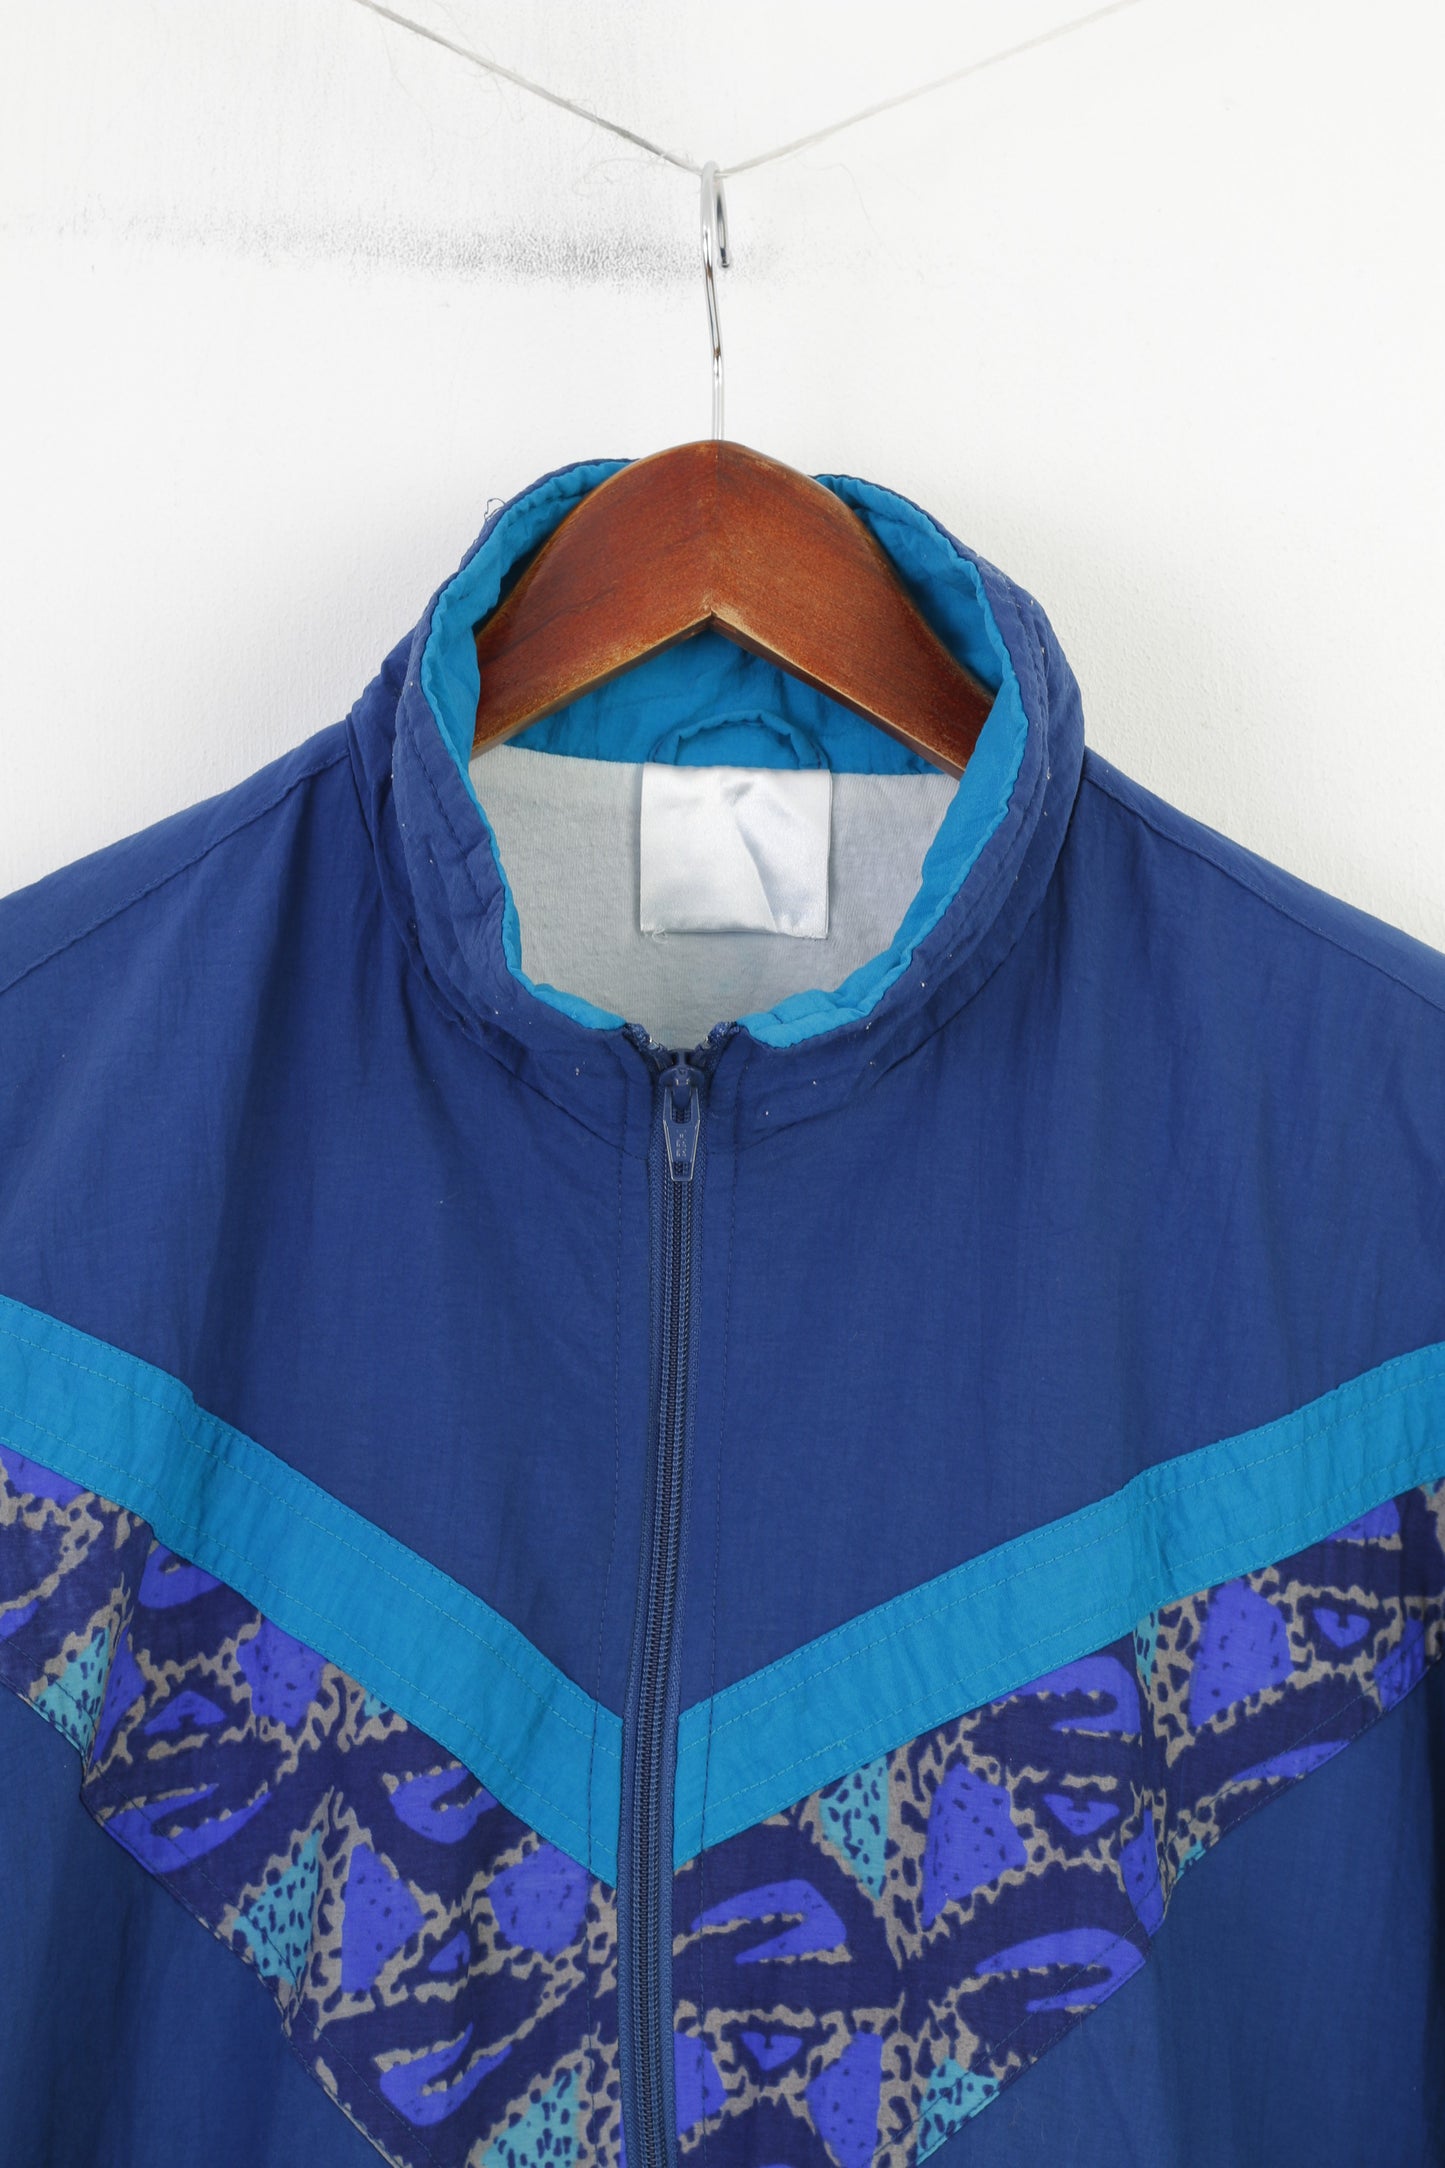 Crane Sports Men S Lightweight Jacket Blue Full Zipper Sportswear Nylon Waterproof Vintage 90s Pockets Top